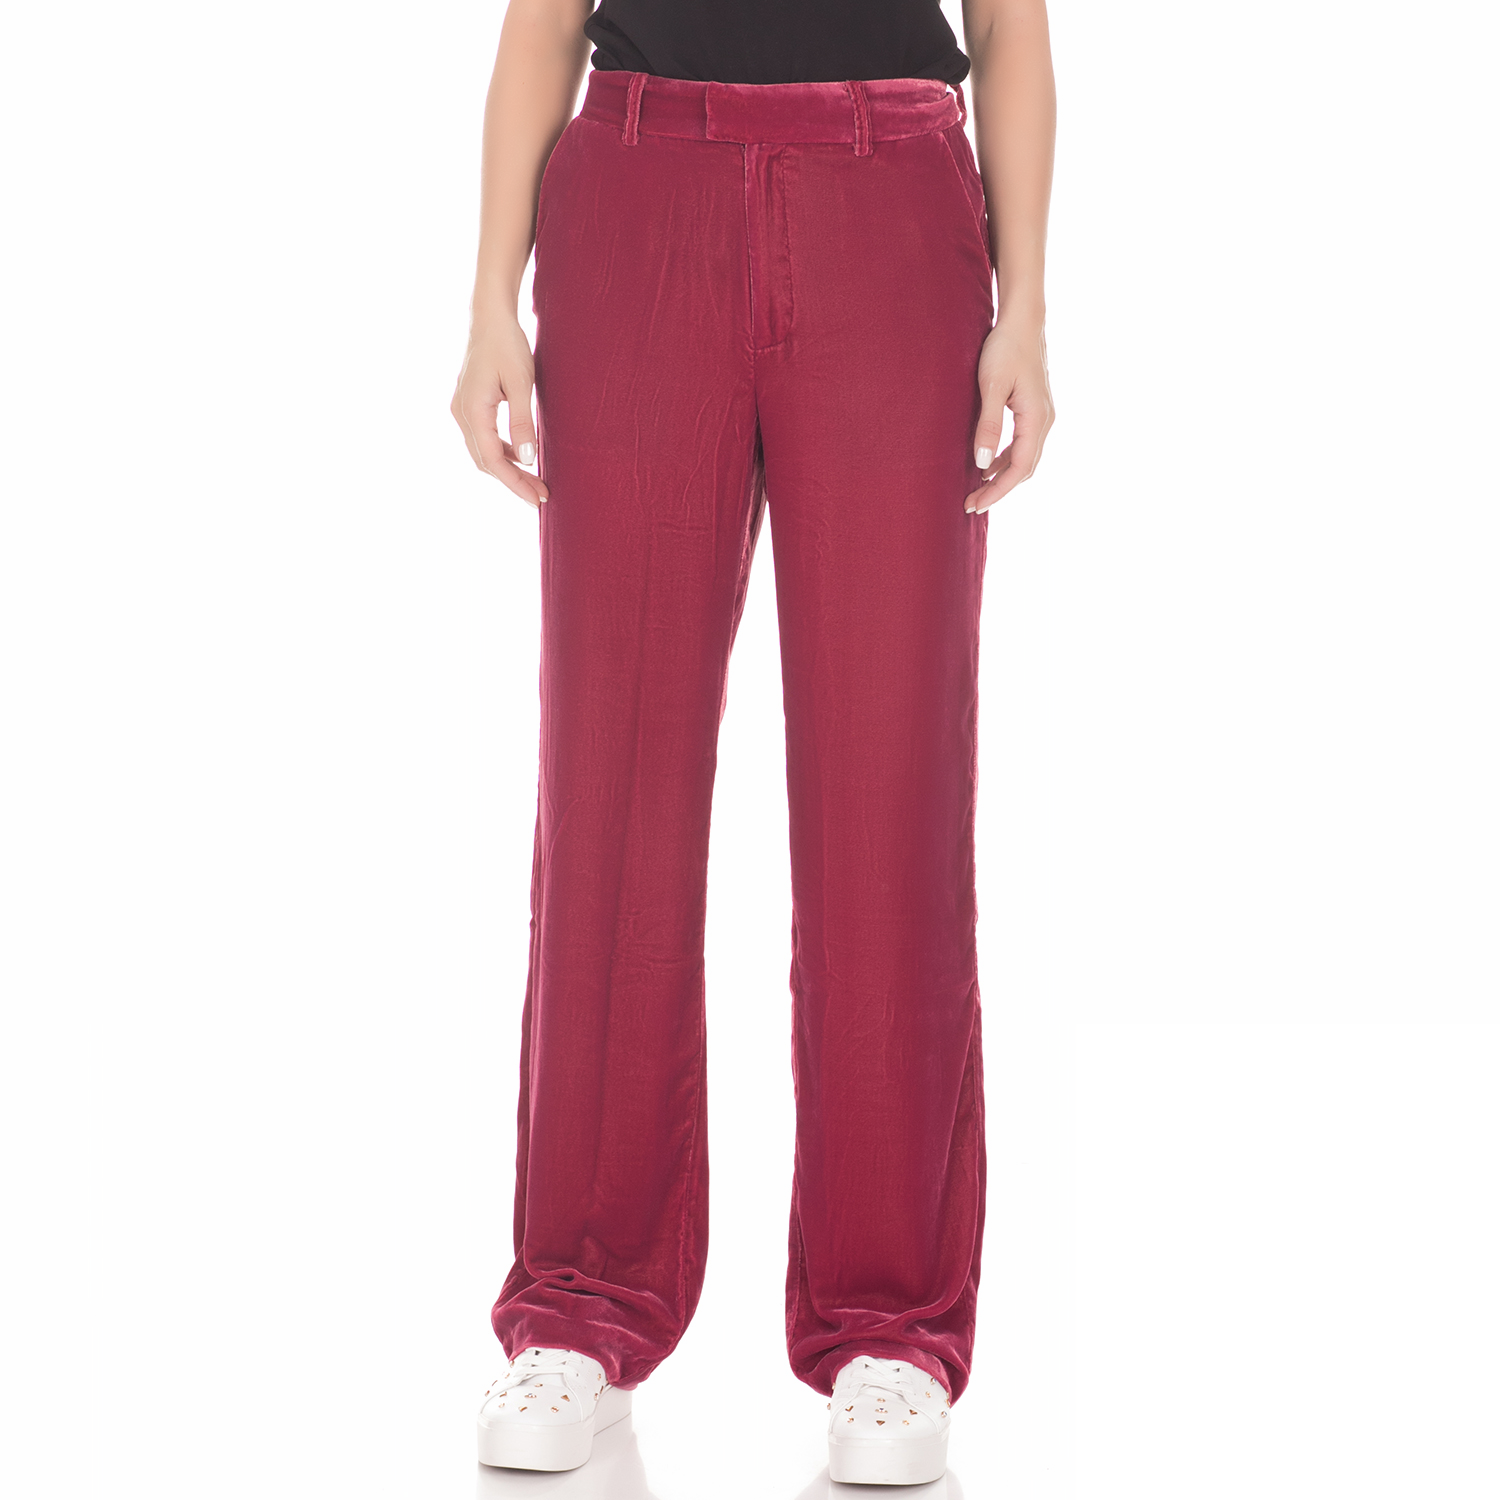 Γυναικεία/Ρούχα/Παντελόνια/Παντελόνες JUICY COUTURE - Γυναικεία παντελόνα JUICY COUTURE VELVET κόκκινη